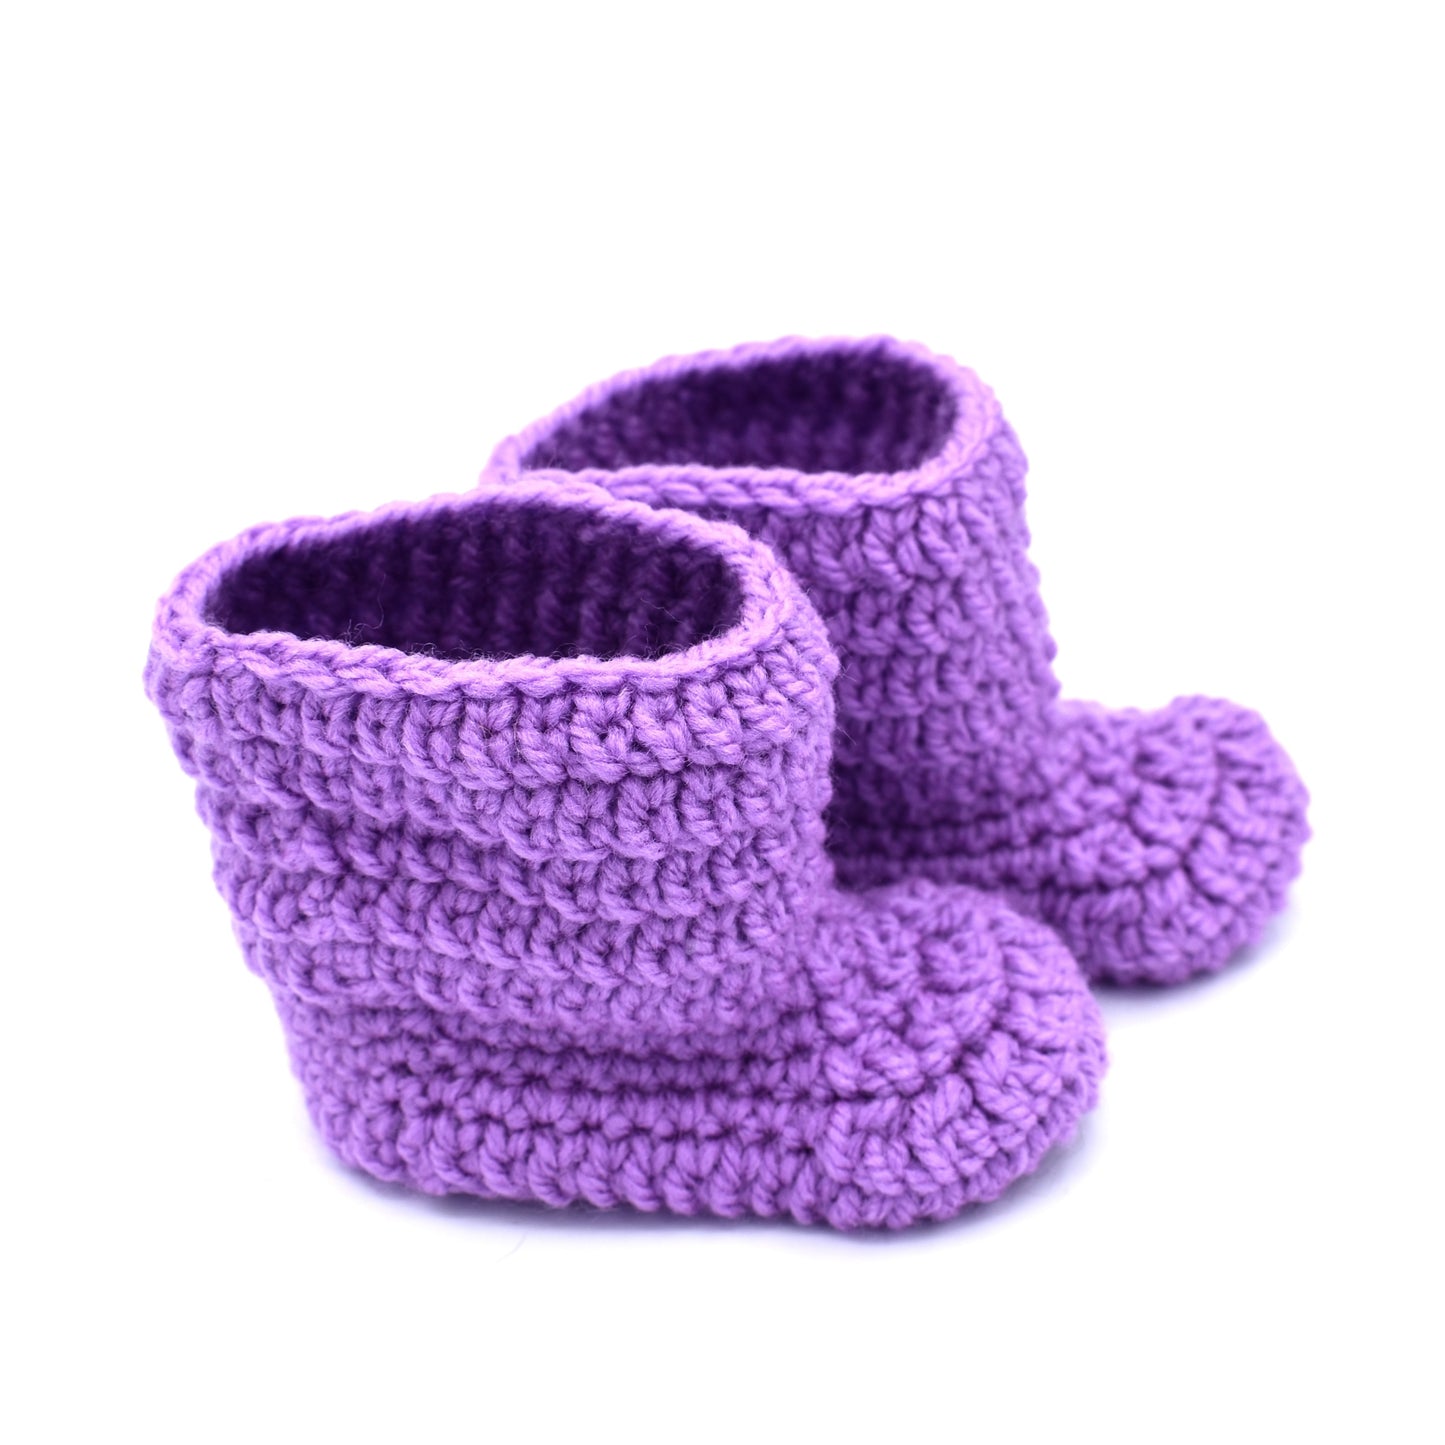 Matildas Crochet Baby Booties